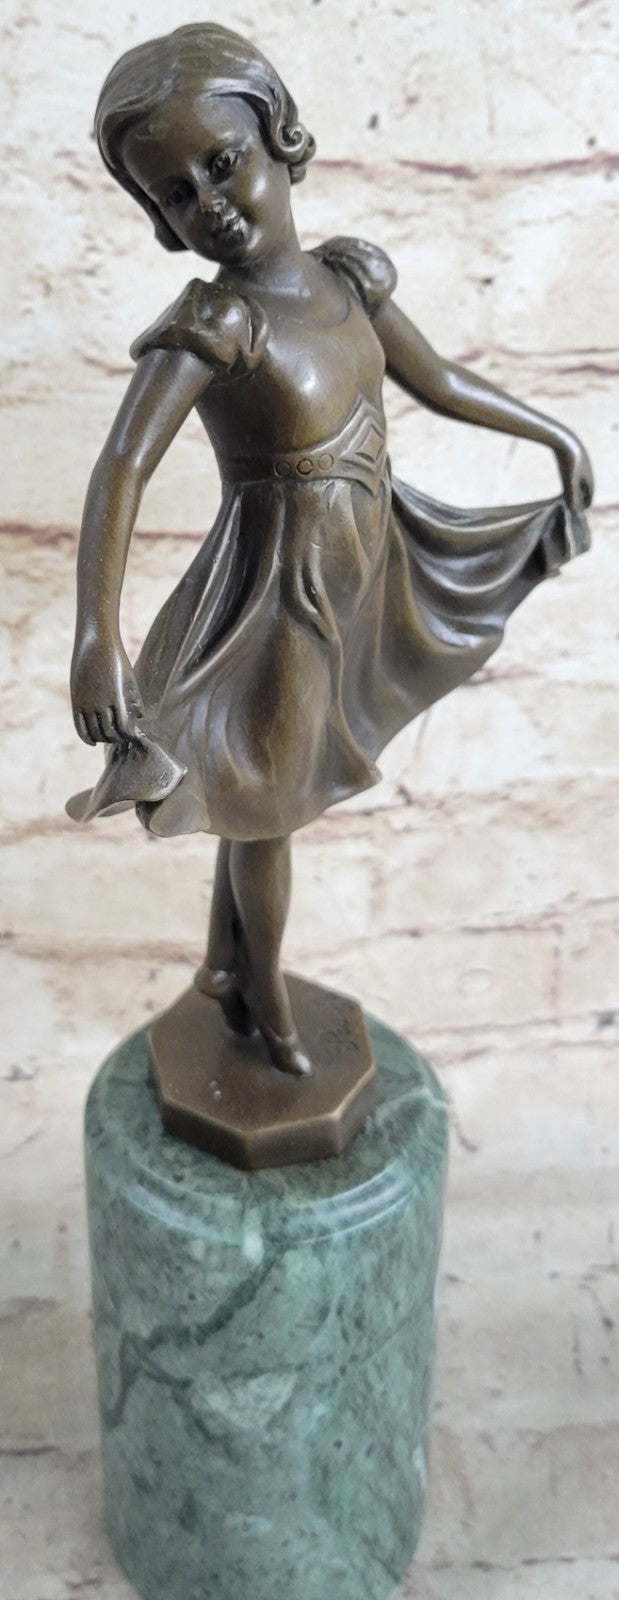 Preiss 12.5 Inch Dancing Ballerina Ballet Girl People Bronze Sculpture Statue